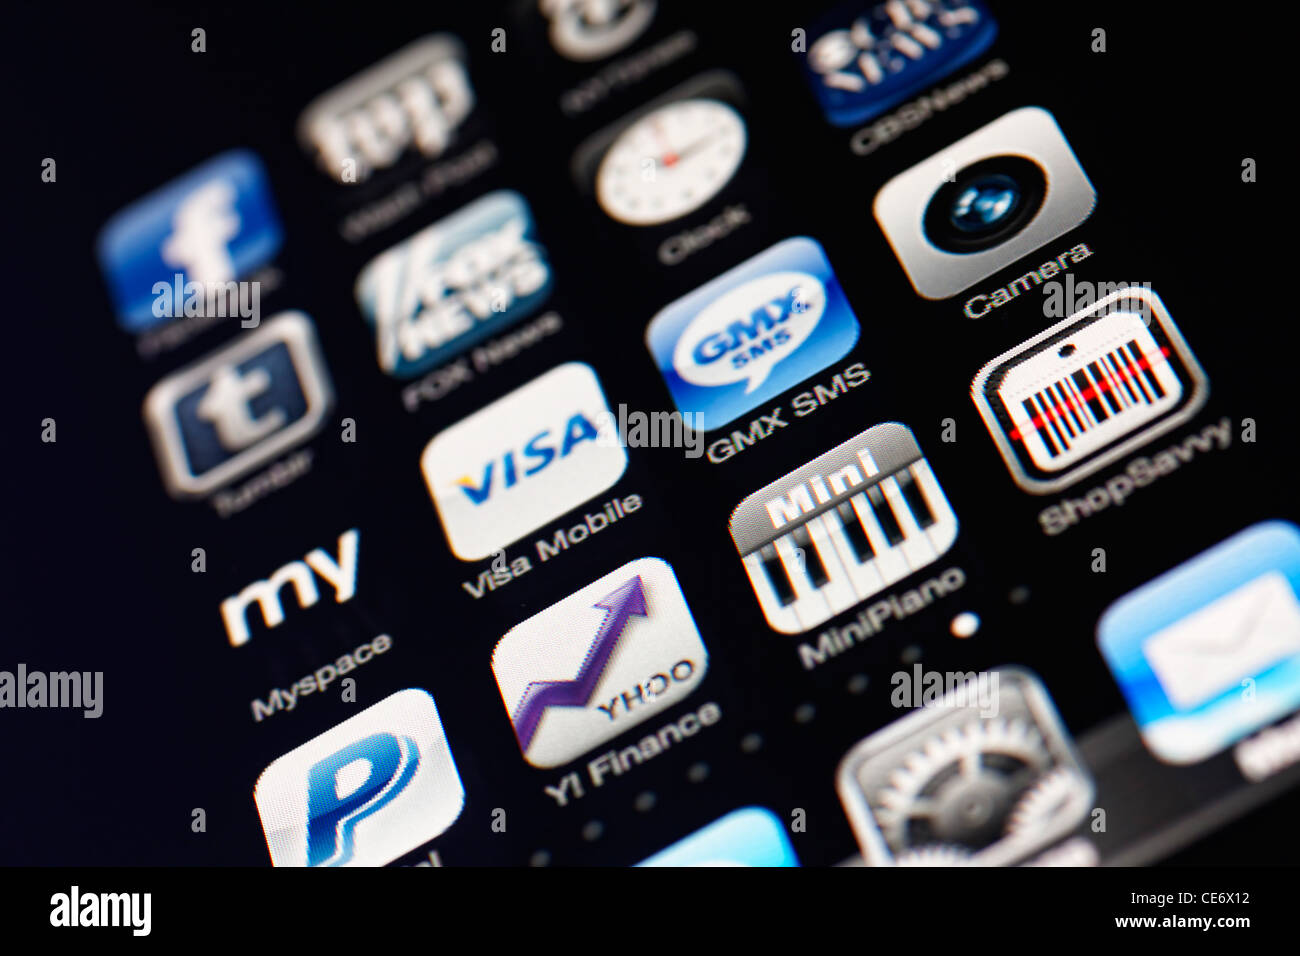 Münster, 26. Januar 2012: Bild des Iphone-Touchscreens. Display zeigt eine Sammlung von nützlichen apps mit blau und g Stockfoto